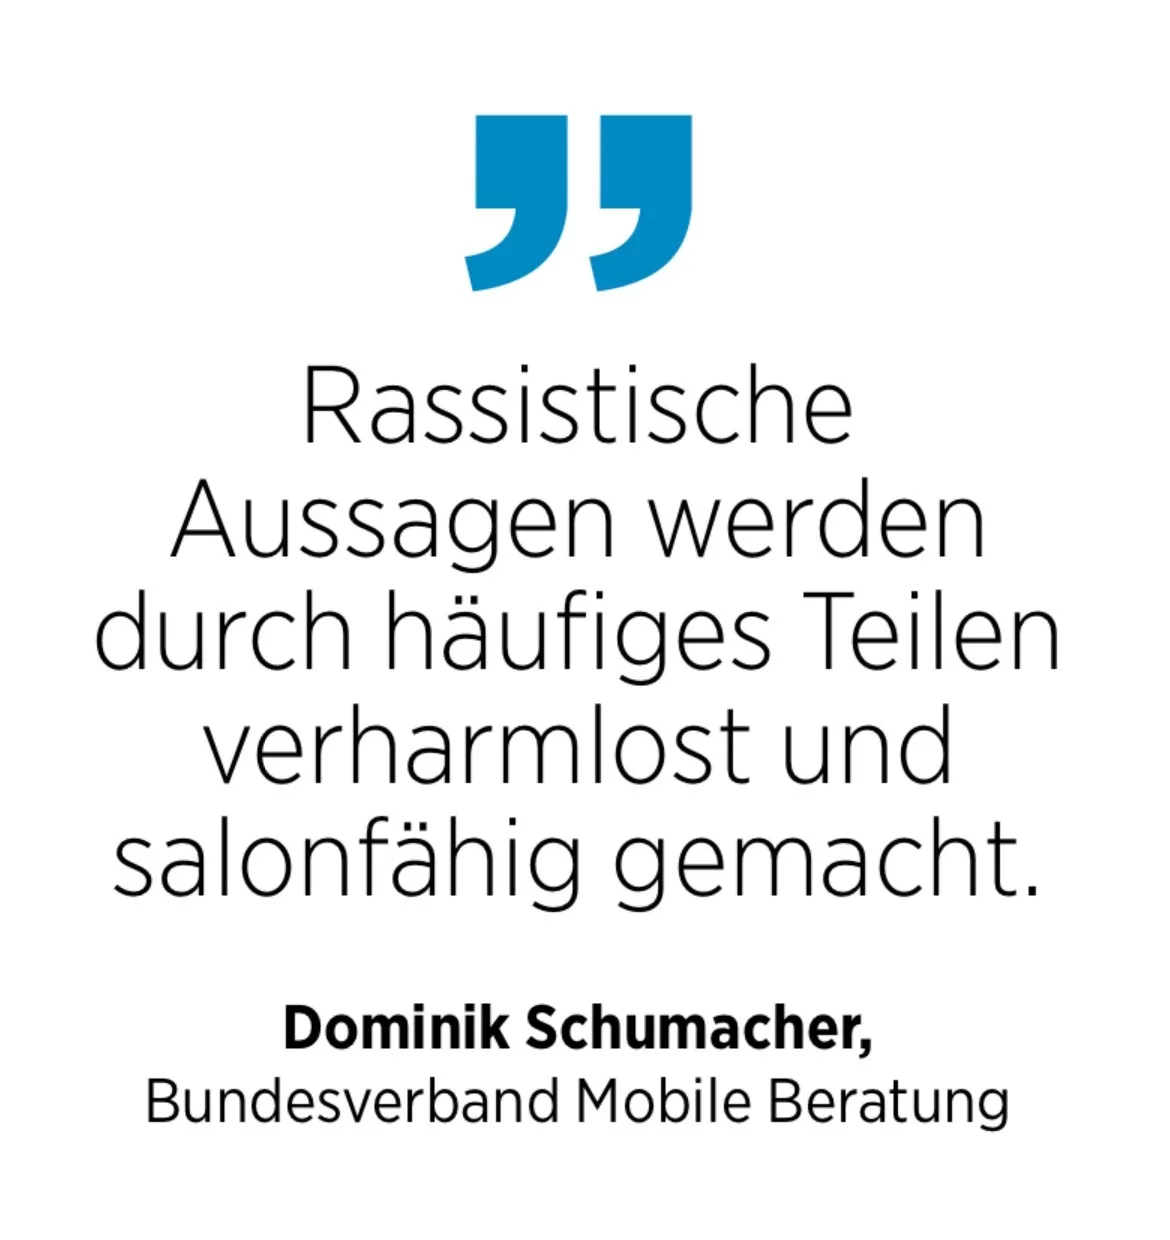 Dominik Schumacher, Bundesverband Mobile Beratung: Rassistische Aussagen werden durch häufiges Teilen verharmlost und salonfähig gemacht.